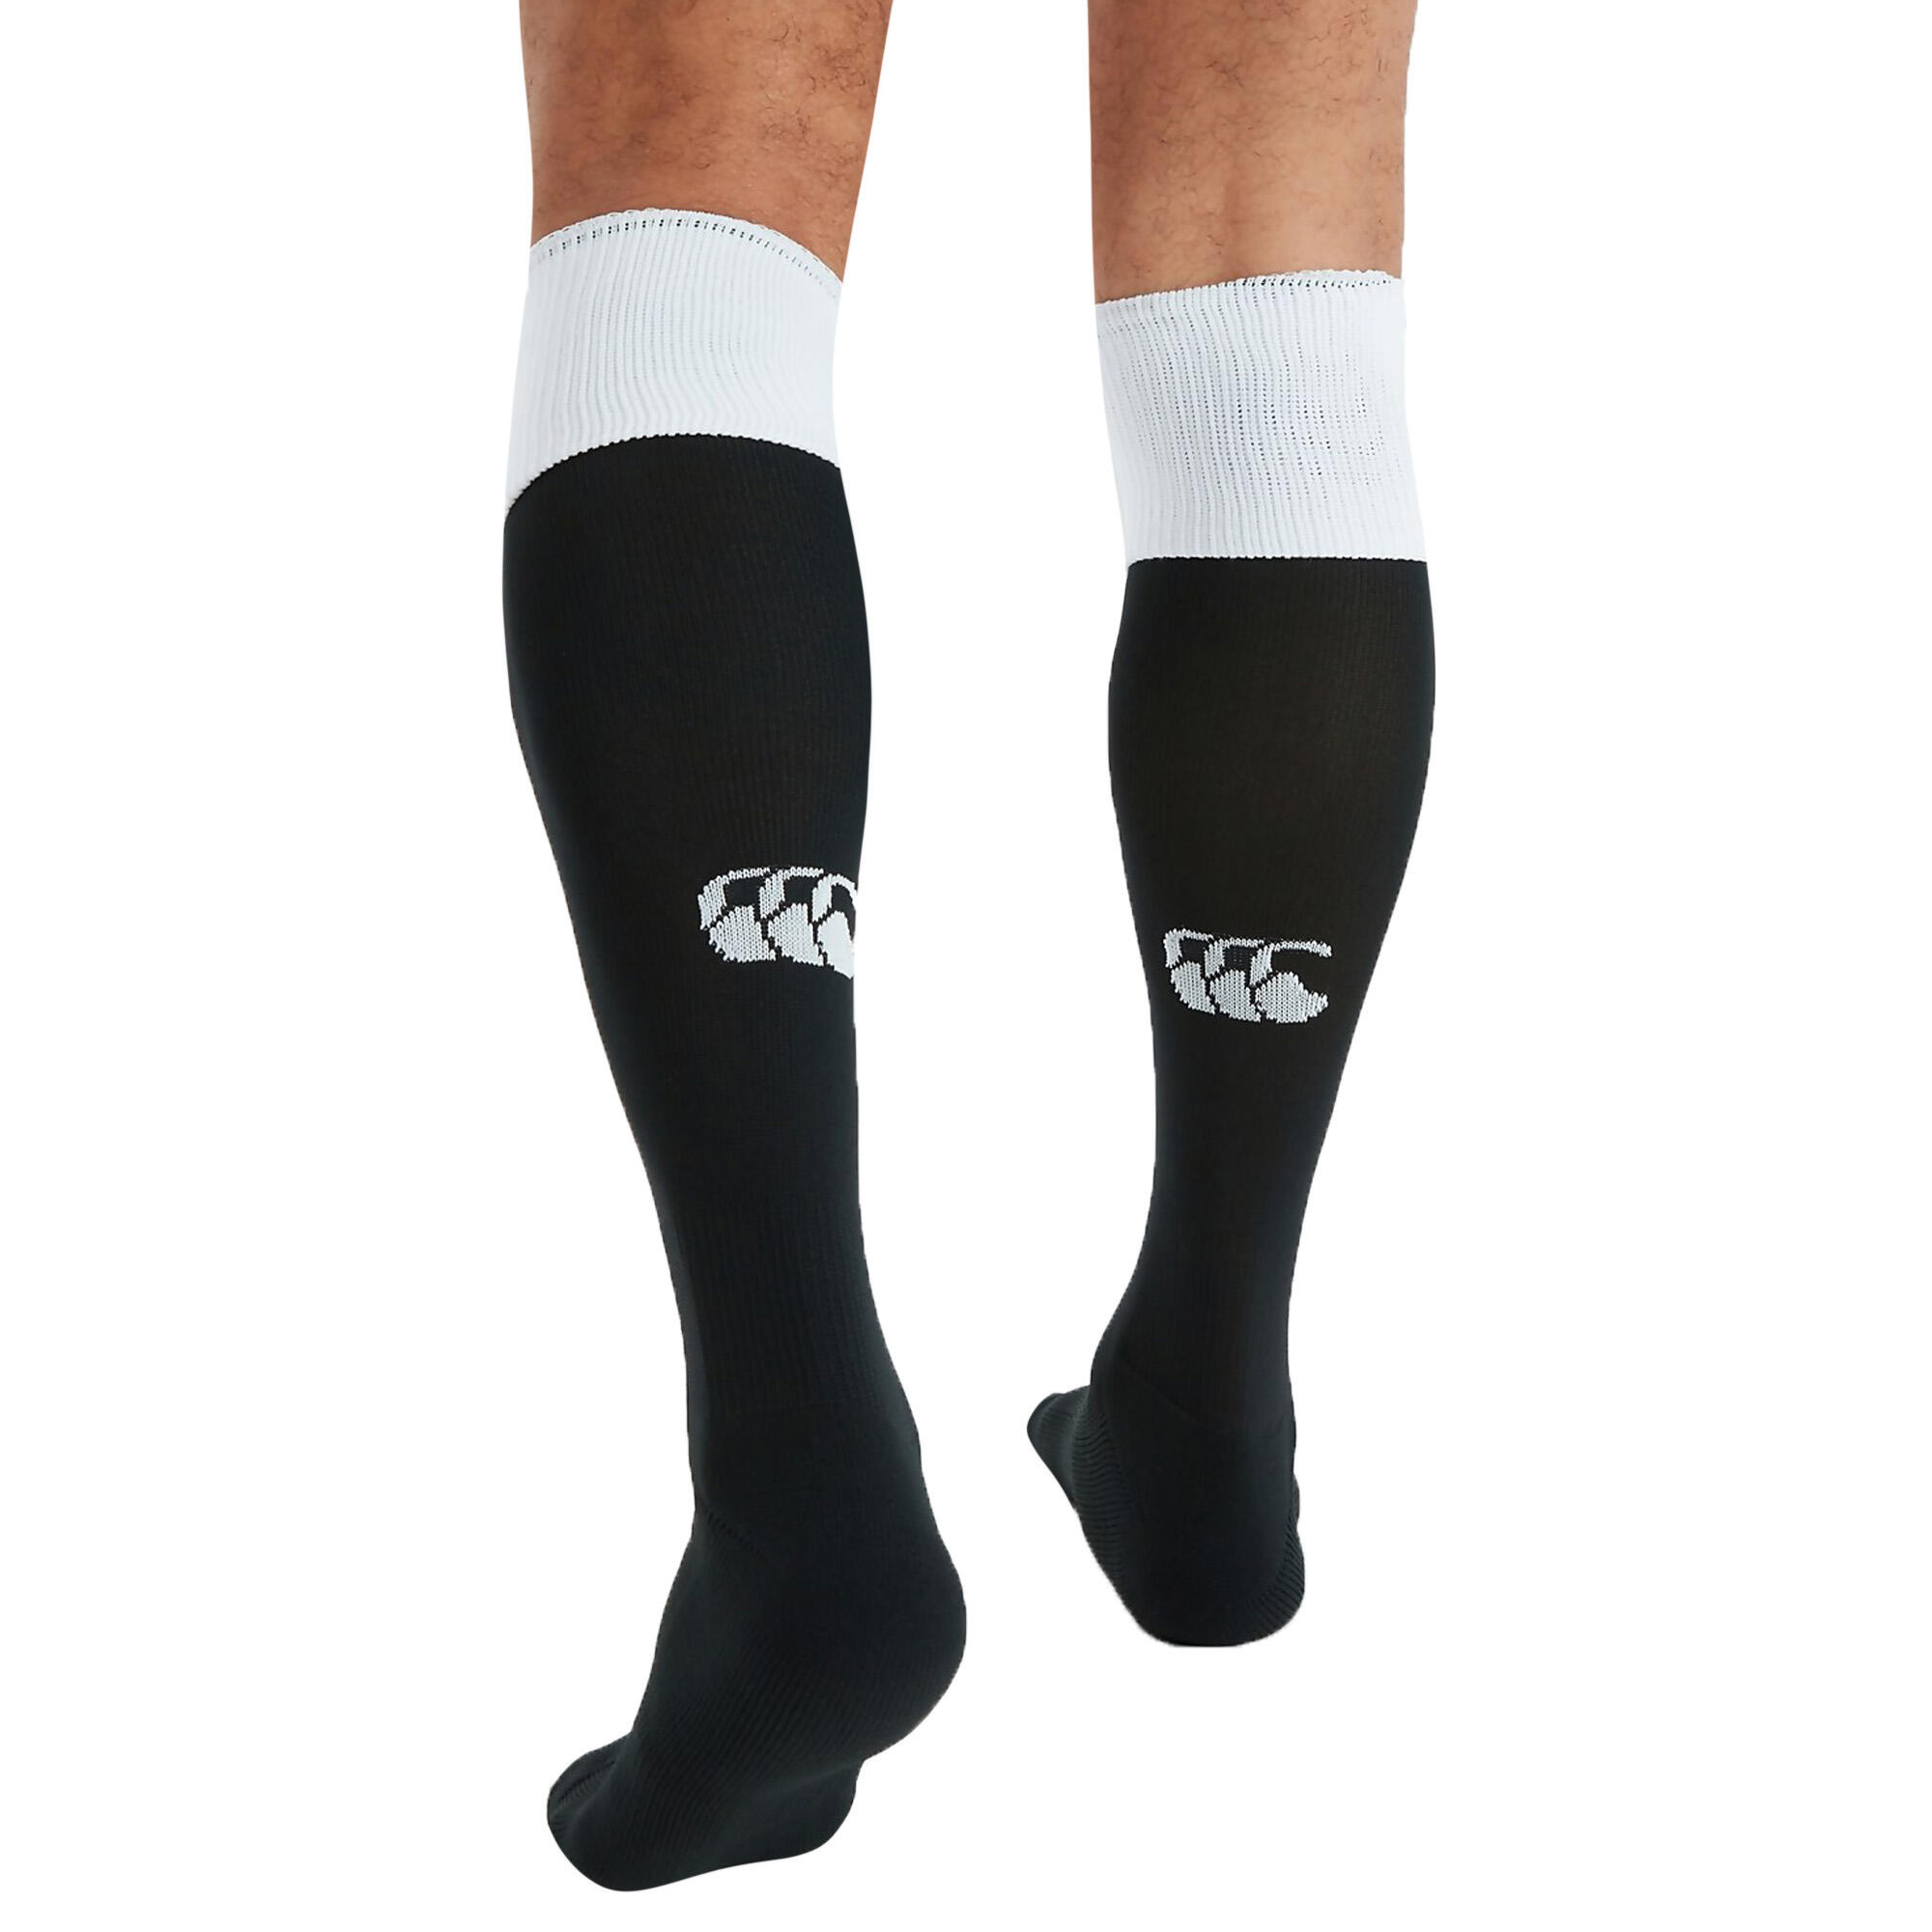 Mens Team Rugby Socks (Black/White) 2/3